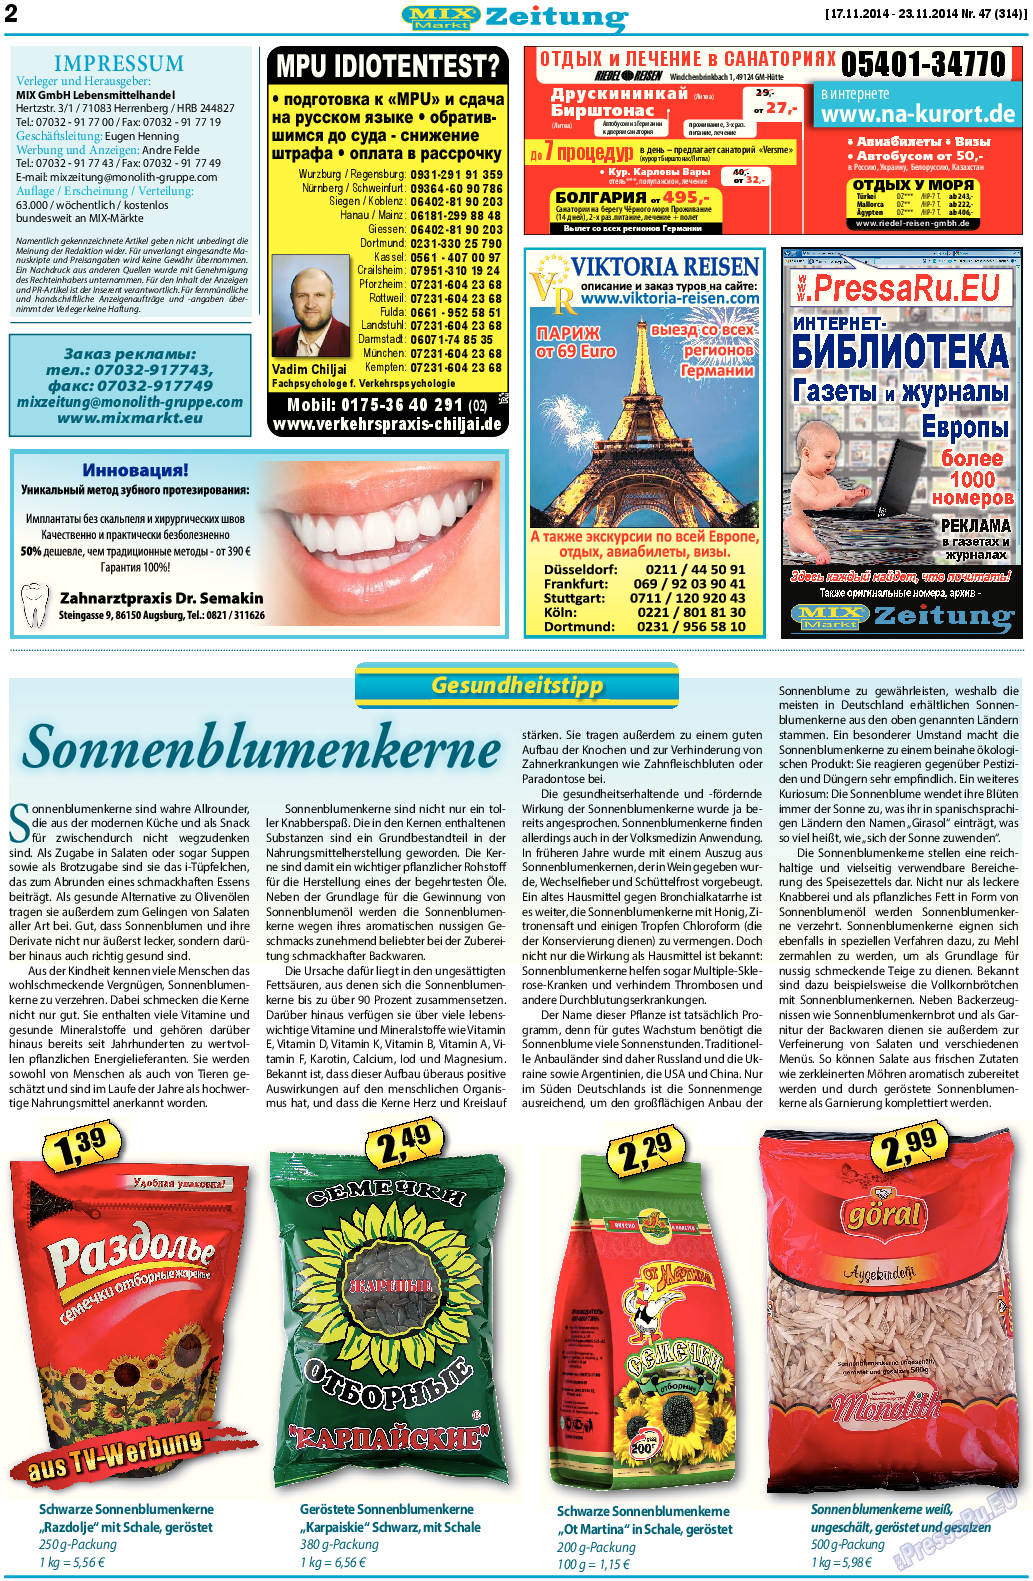 MIX-Markt Zeitung (газета). 2014 год, номер 47, стр. 2